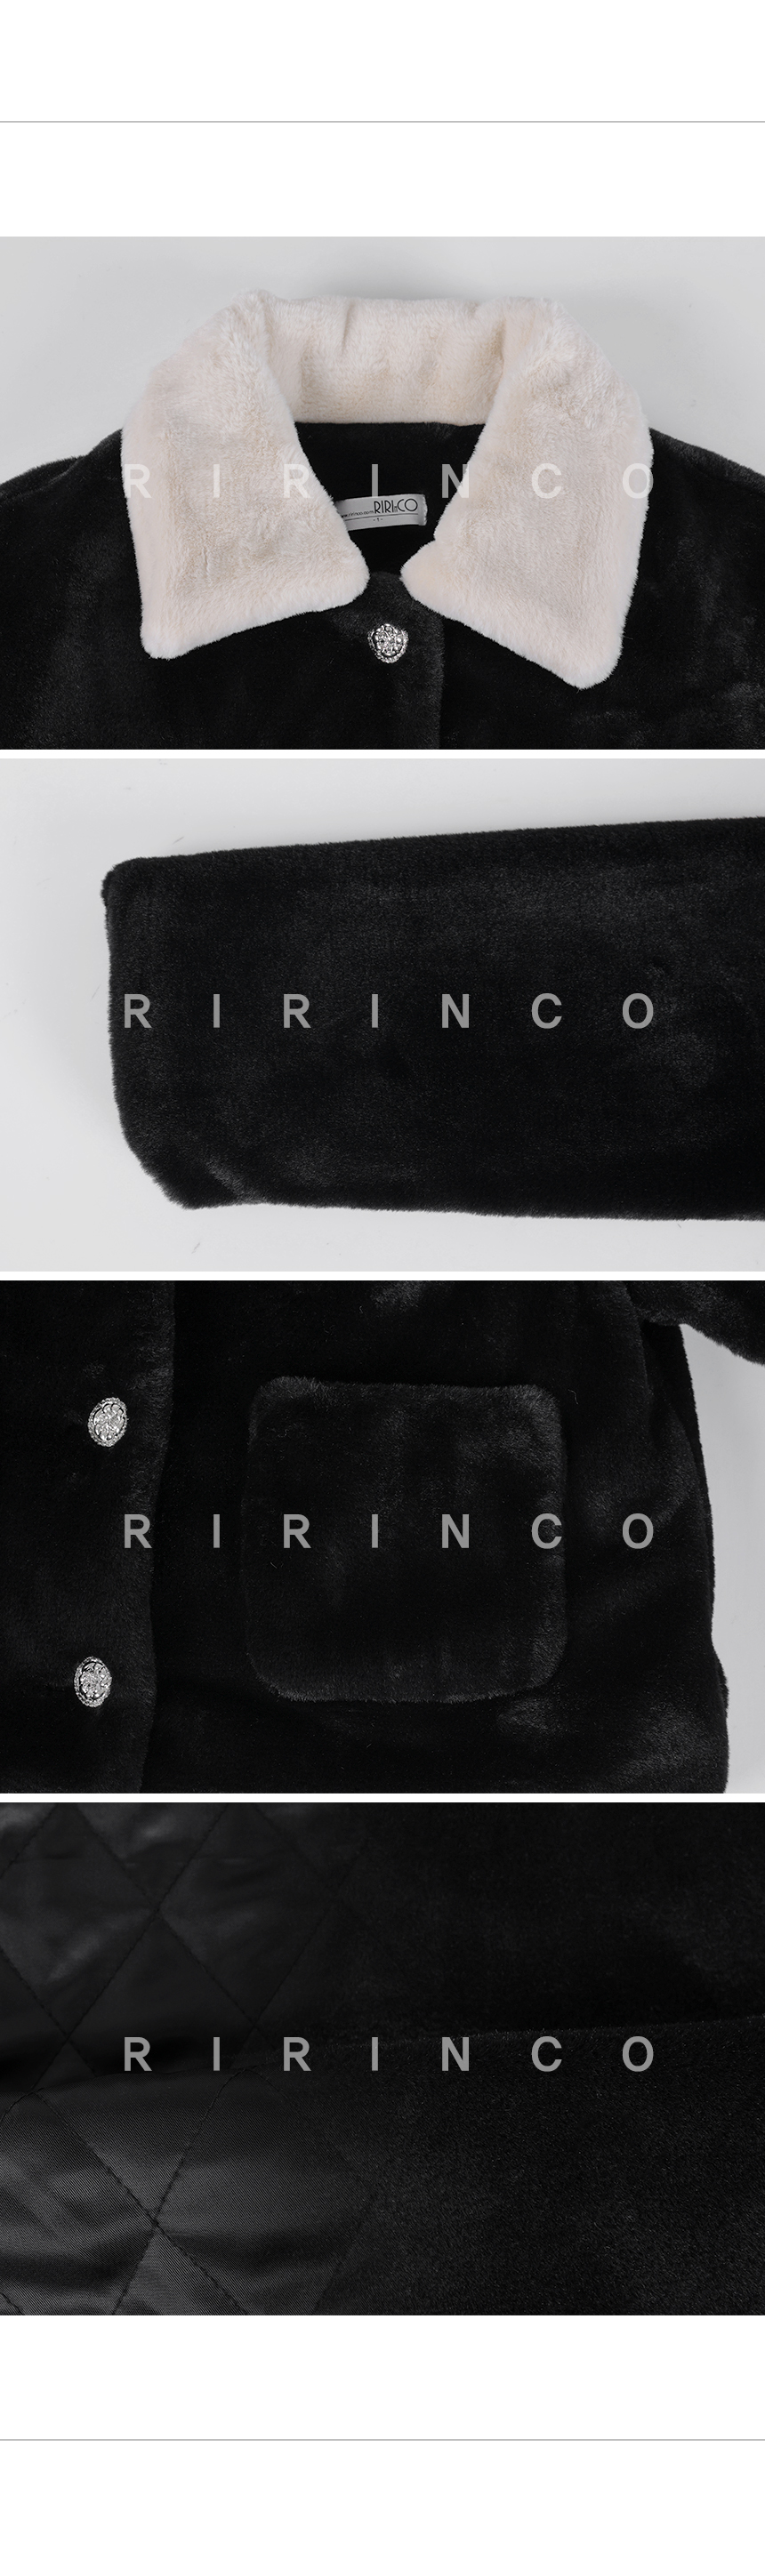 RIRINCO フェイクファー配色カラーネックジャケット(キルティング裏地)